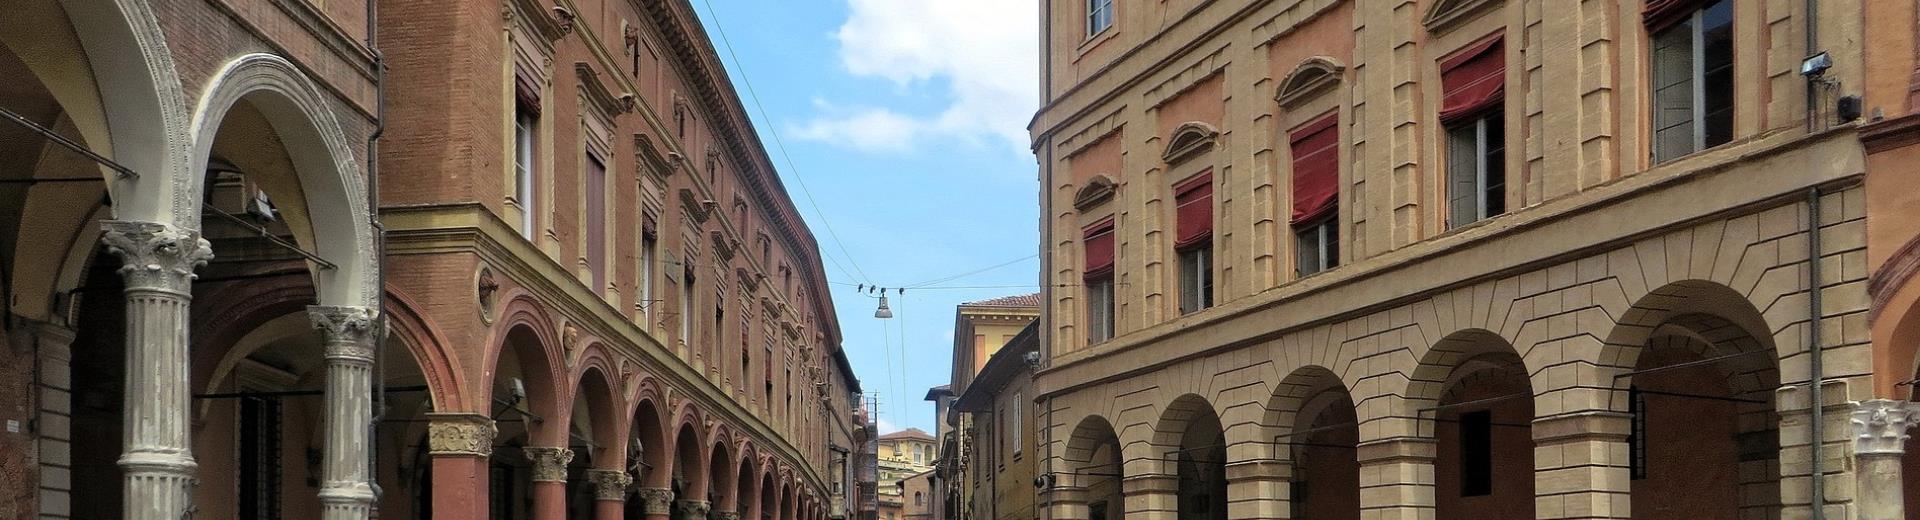 Bologna centro and arcades-Hotel San Donato